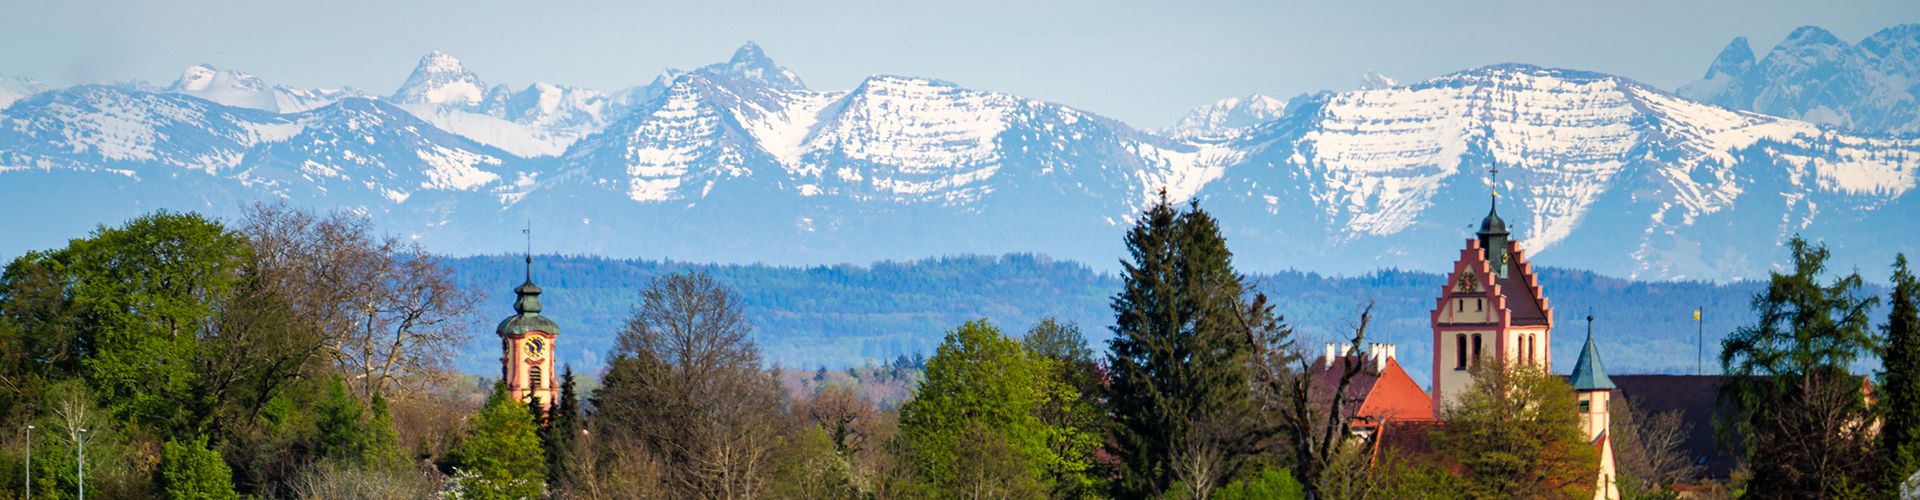 Eine Weitwinkelaufnahme mit dem Blick auf Kisslegg, umrahmt von Wiesen, Bäumen und Waldstücken, im Hintergrund die Alpenbergkette bei lichtem Wetter in einer Frühlingsstimmung.